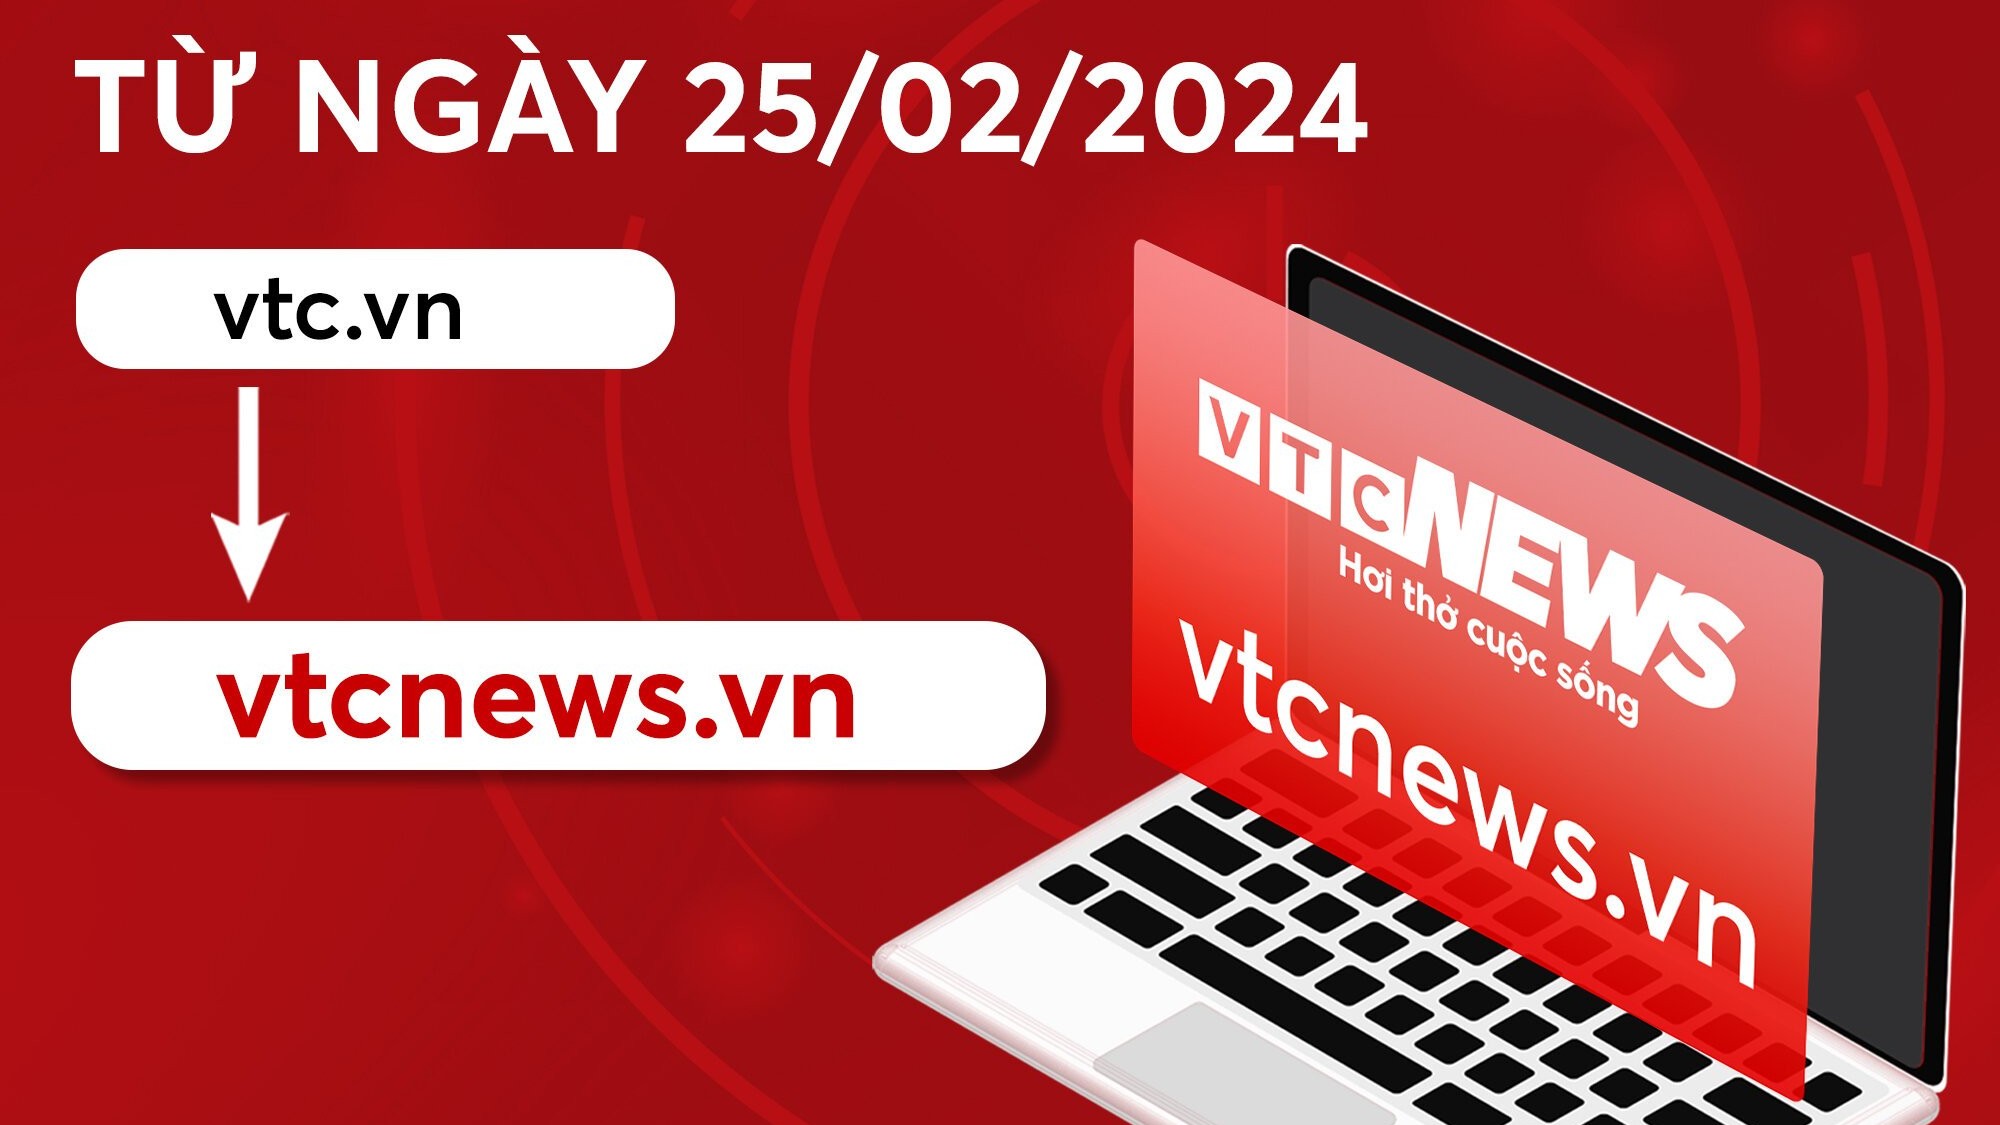 Báo điện tử VTC News chính thức đổi tên miền vtc.vn sang vtcnews.vn